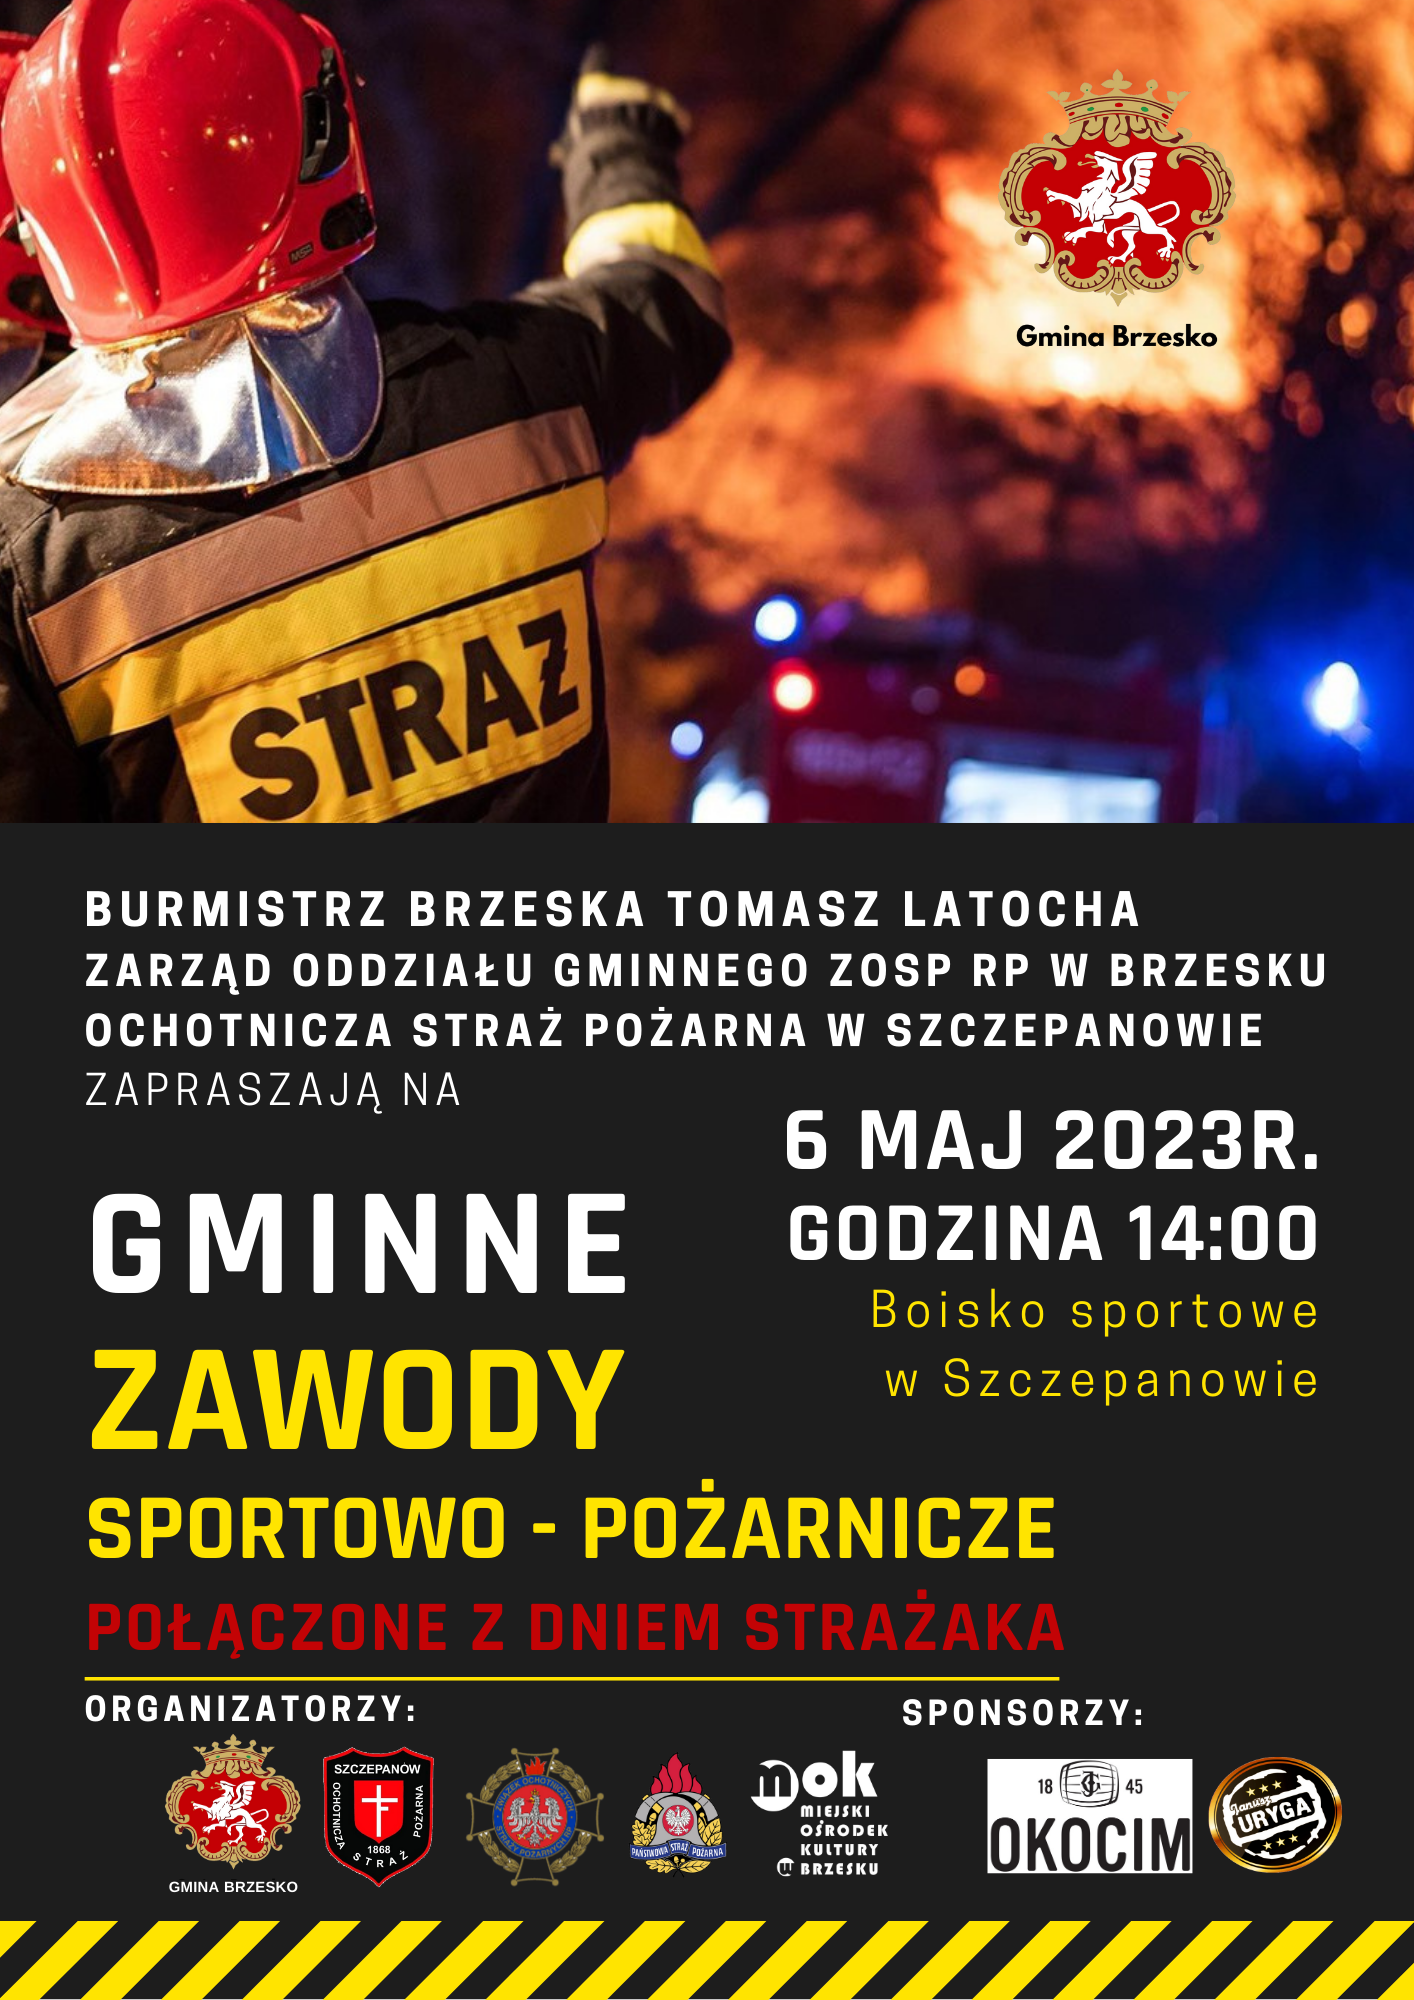 gminne-zawody-sportowo-pozarnicze-1.png